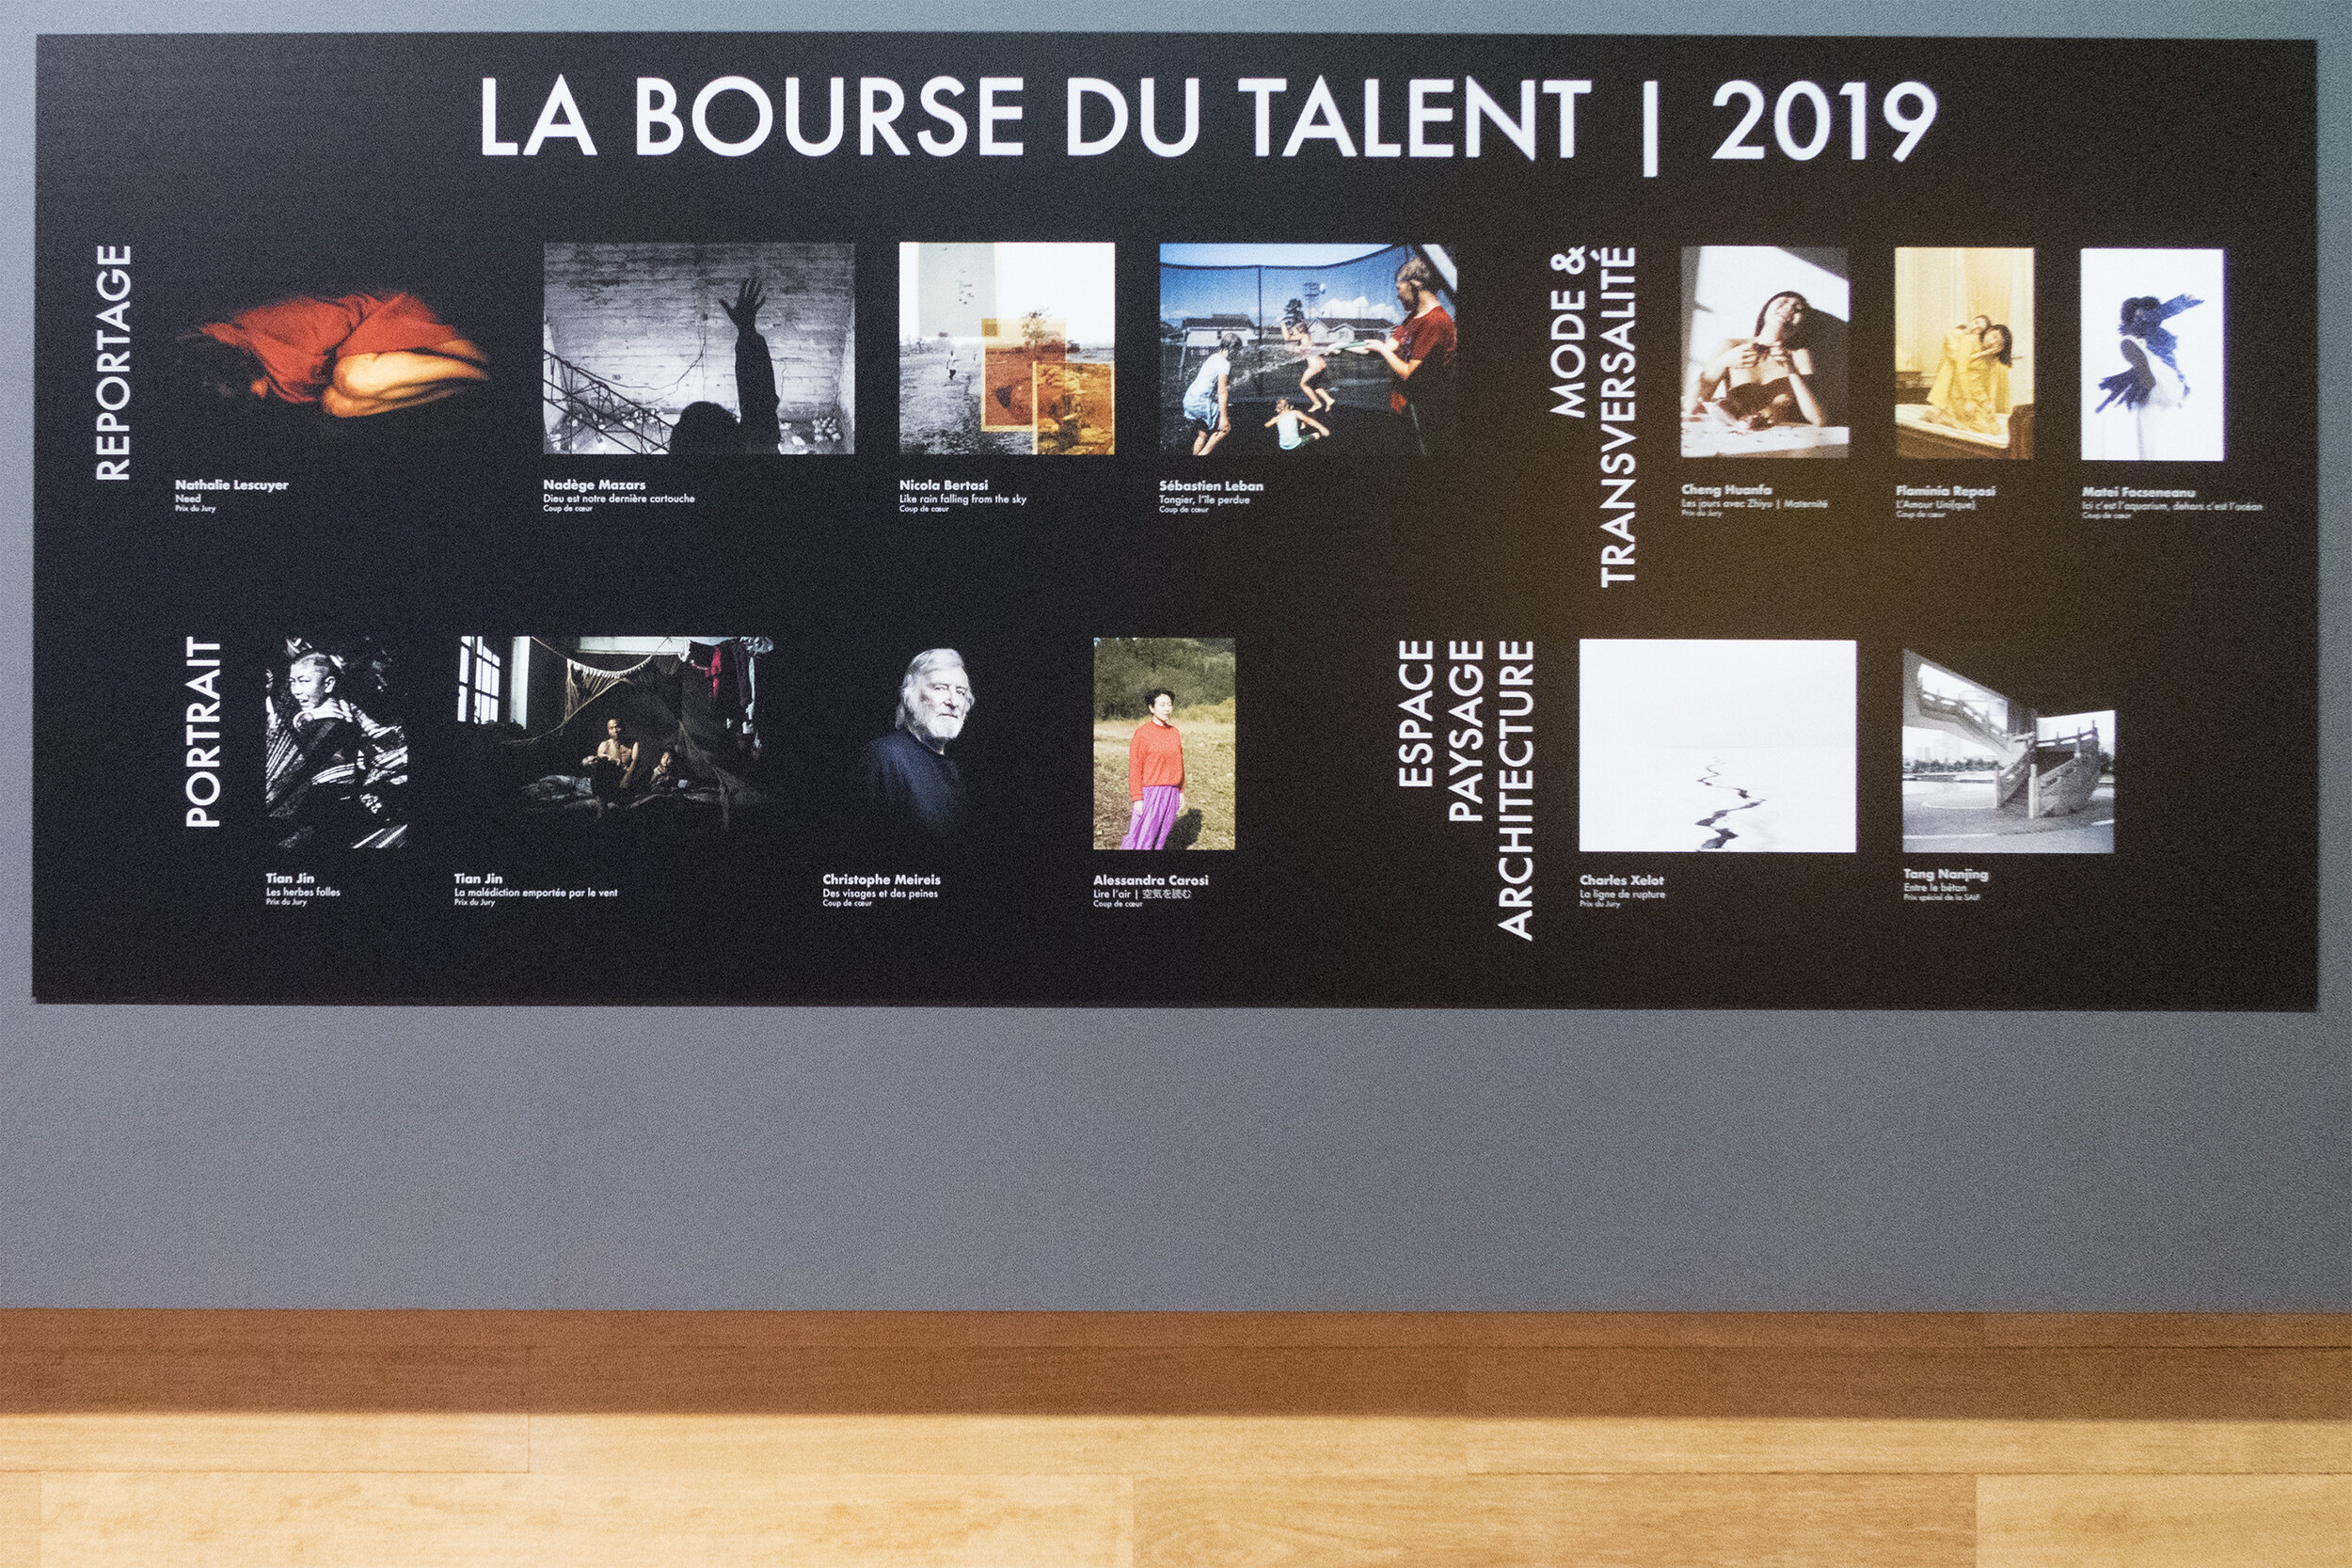  Bourse du Talent 2019, Bibliothèque nationale de France (BnF), Paris, France, 11.02.2020 